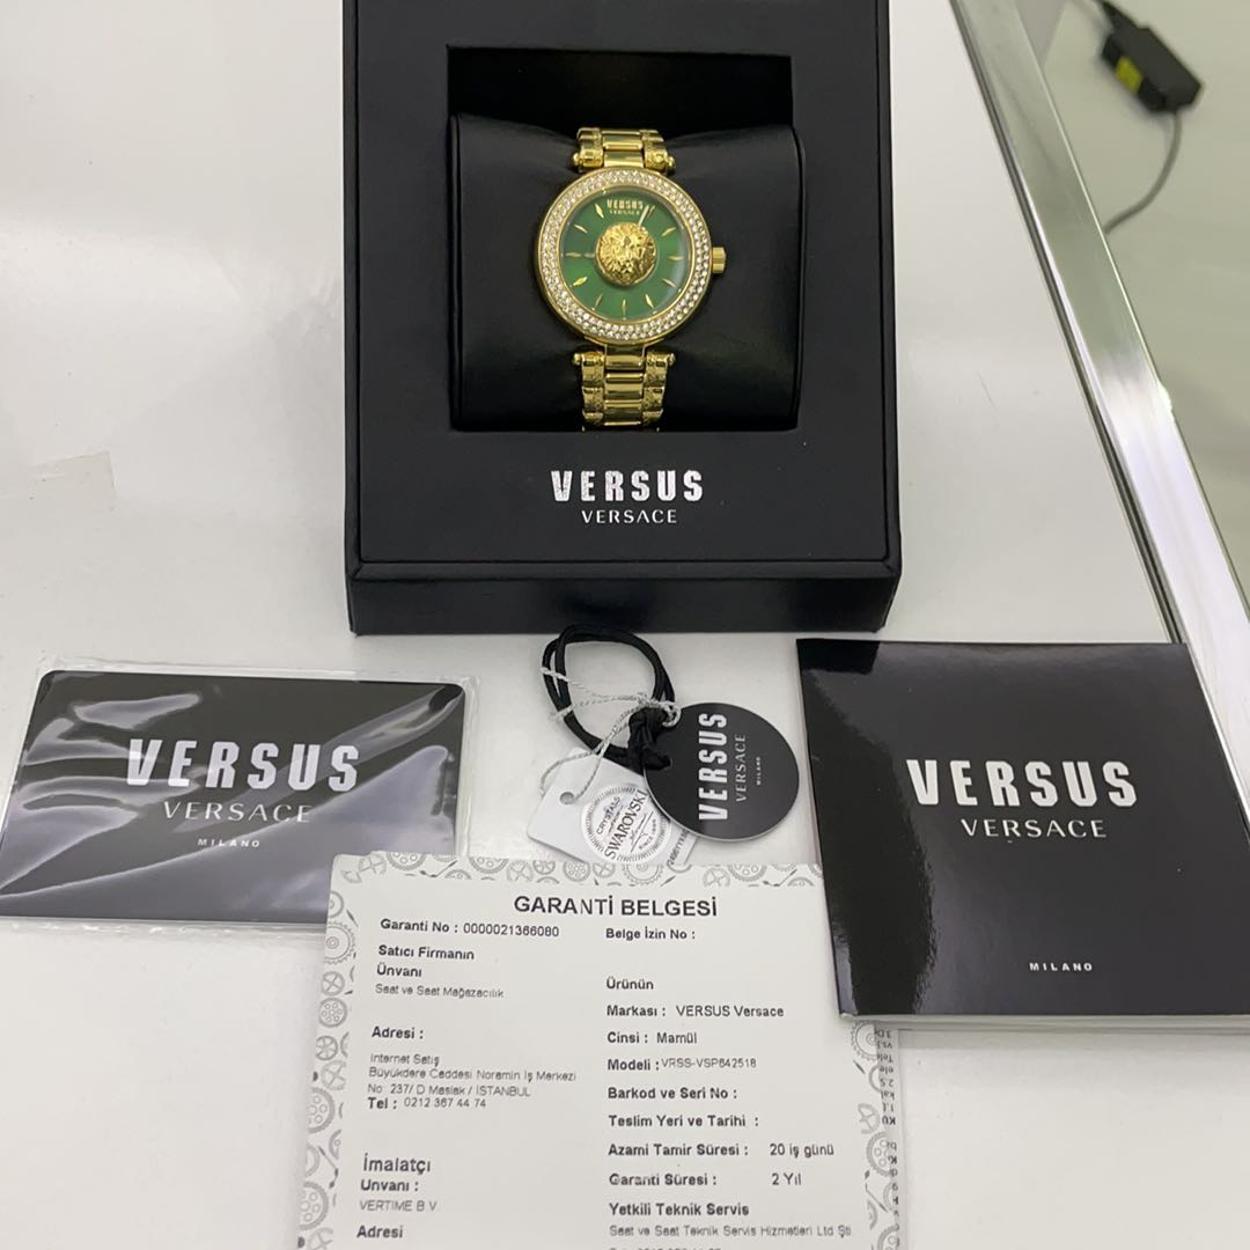 Versus Versace Kadın Kol Saati Orj. Saatvesaat garantili 2 yıl |  DonanımHaber Forum